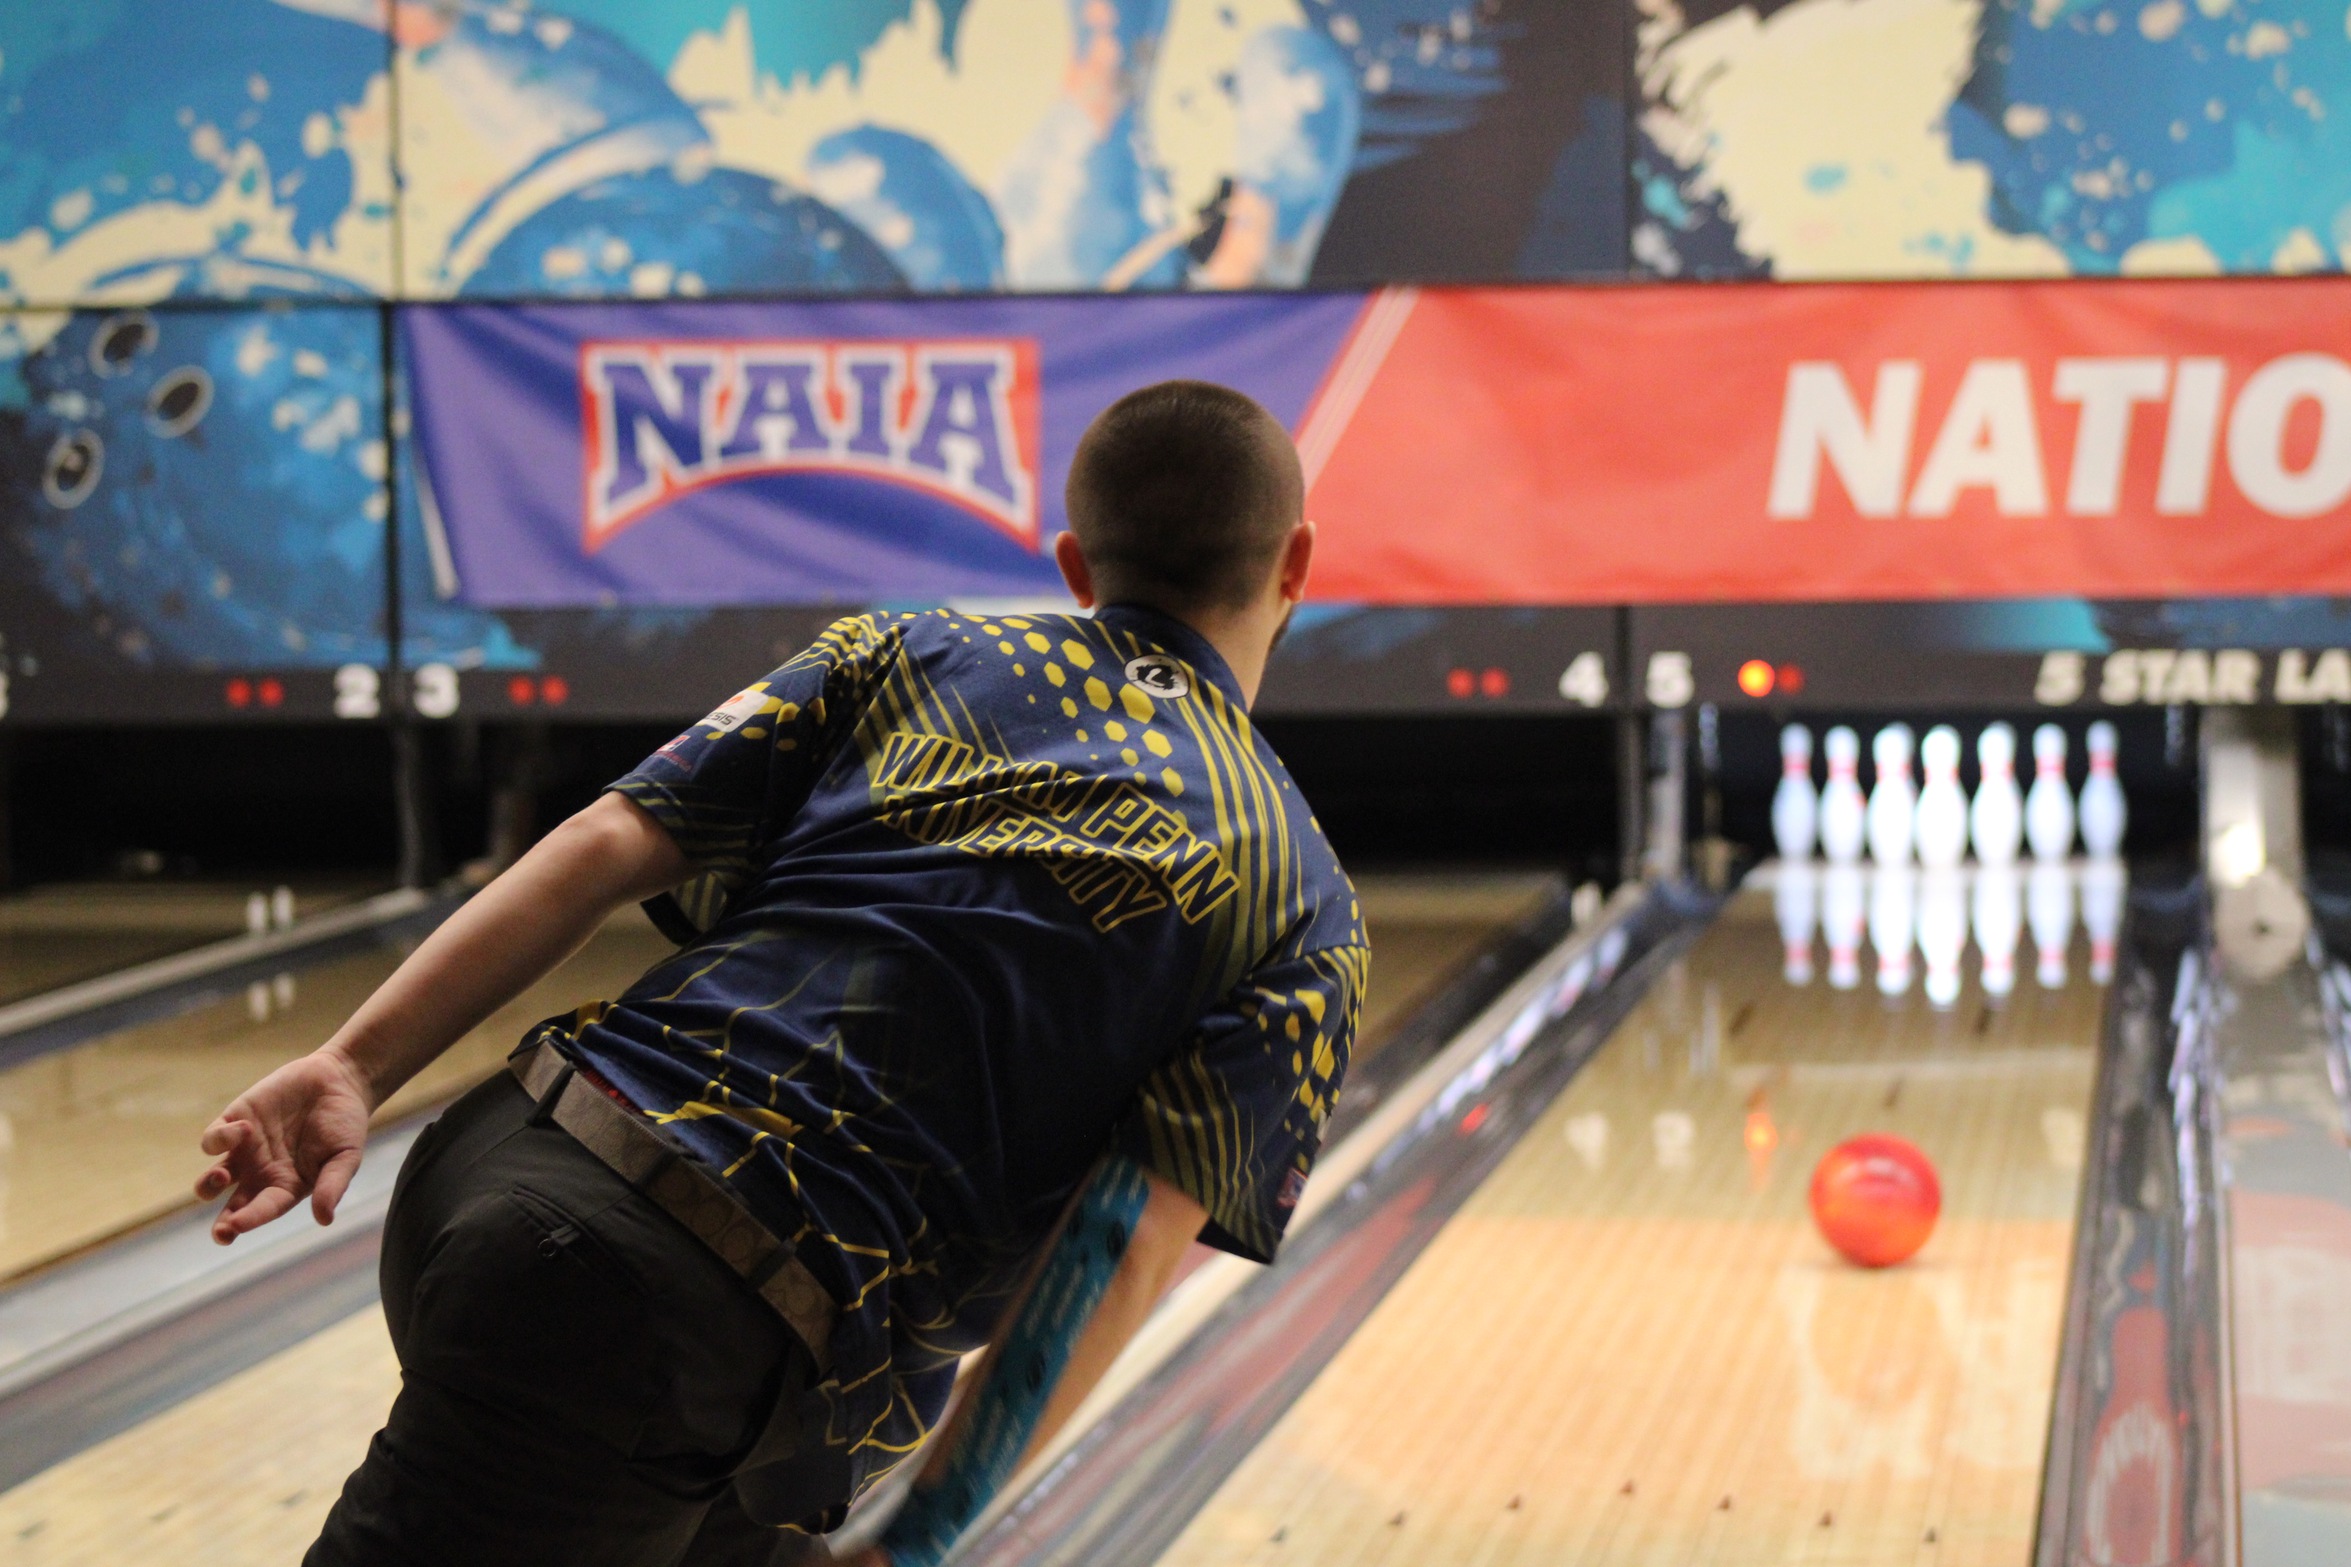 Baker Play at the 2022 NAIA Men's Bowling National Championship